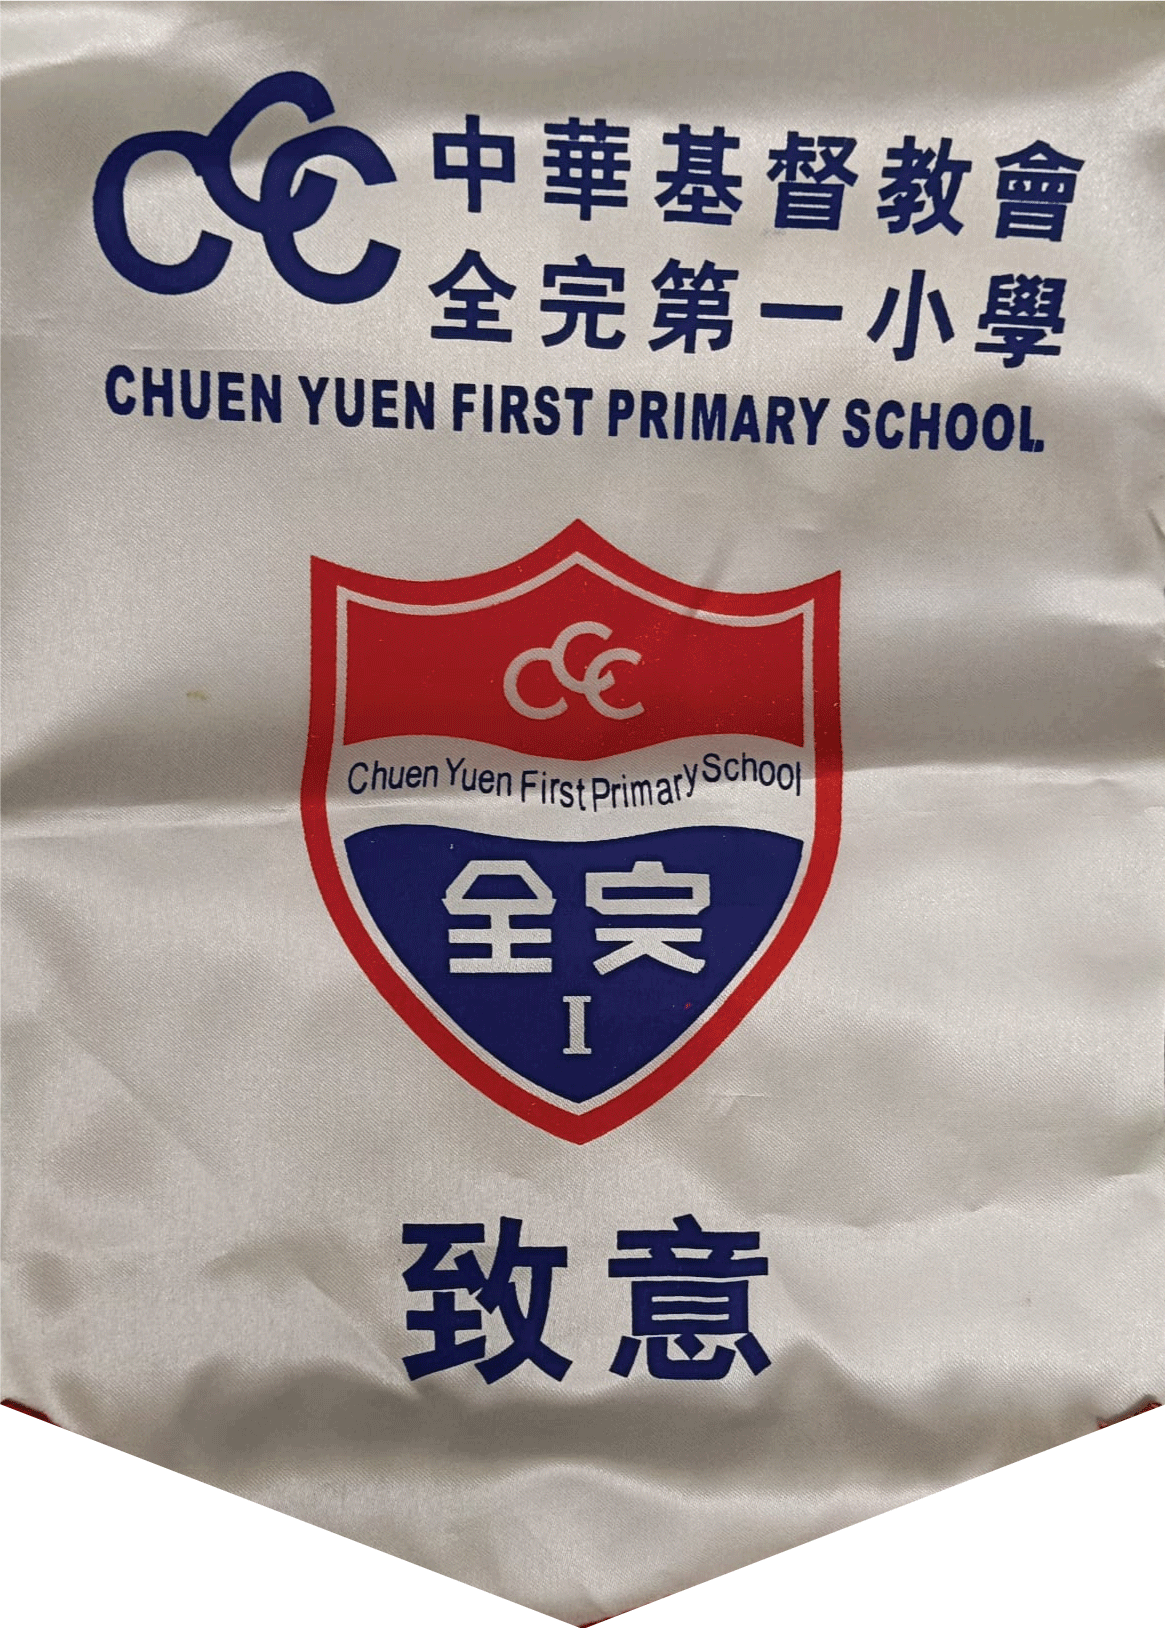 中華基督教會全完第一小學